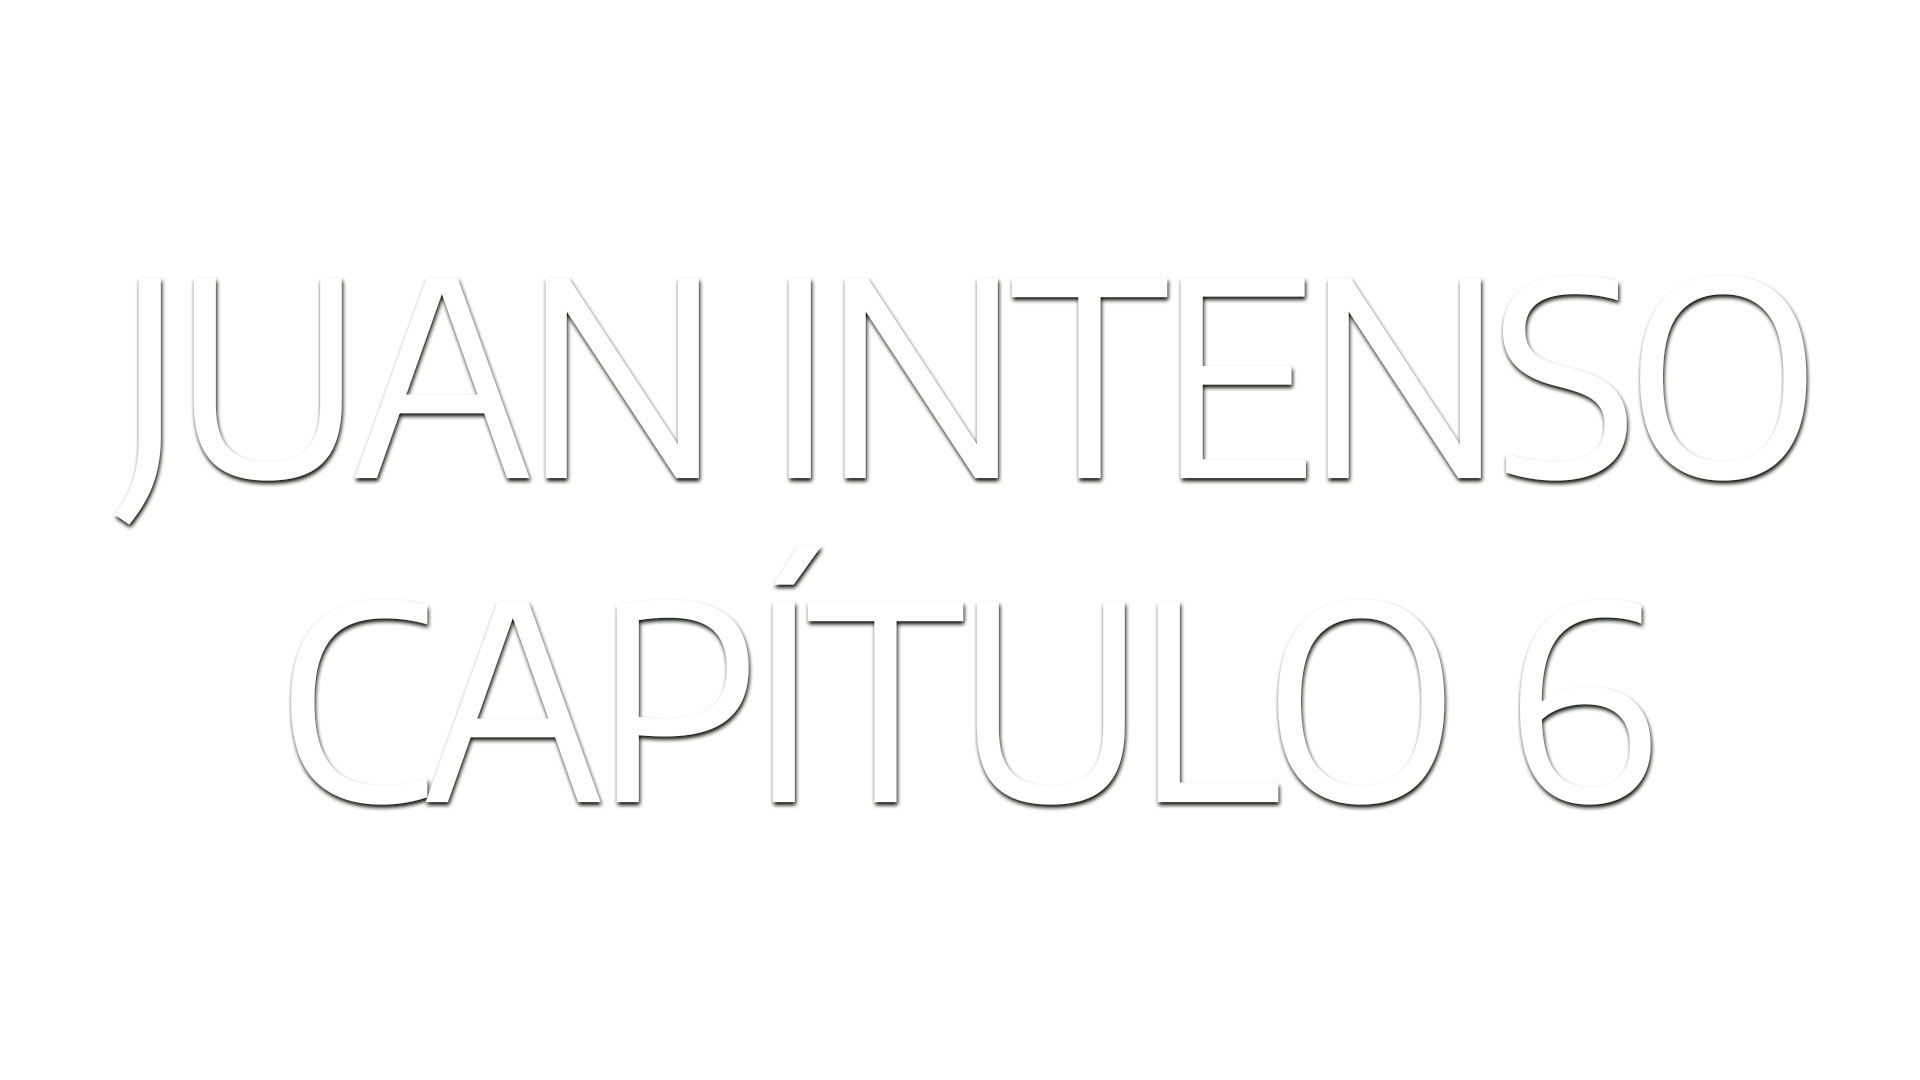 Juan Intenso – Ep 6